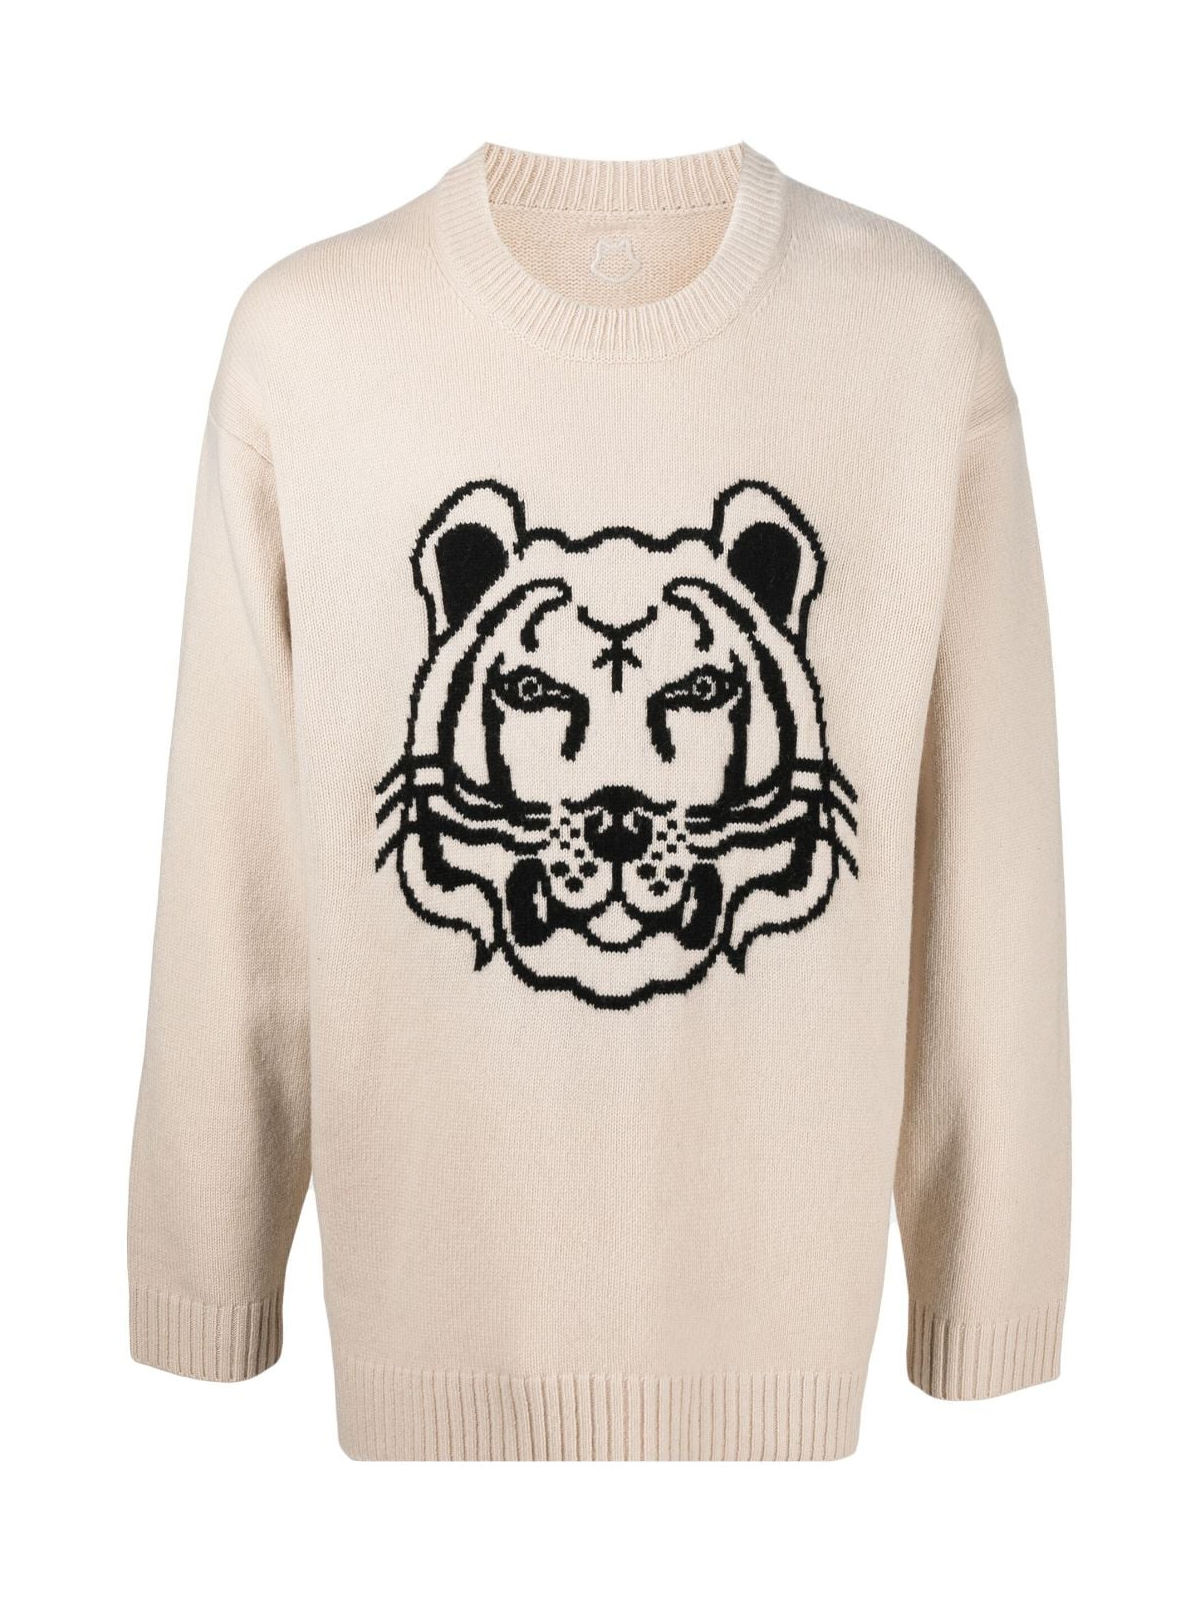 K-Tiger Logo Sweater